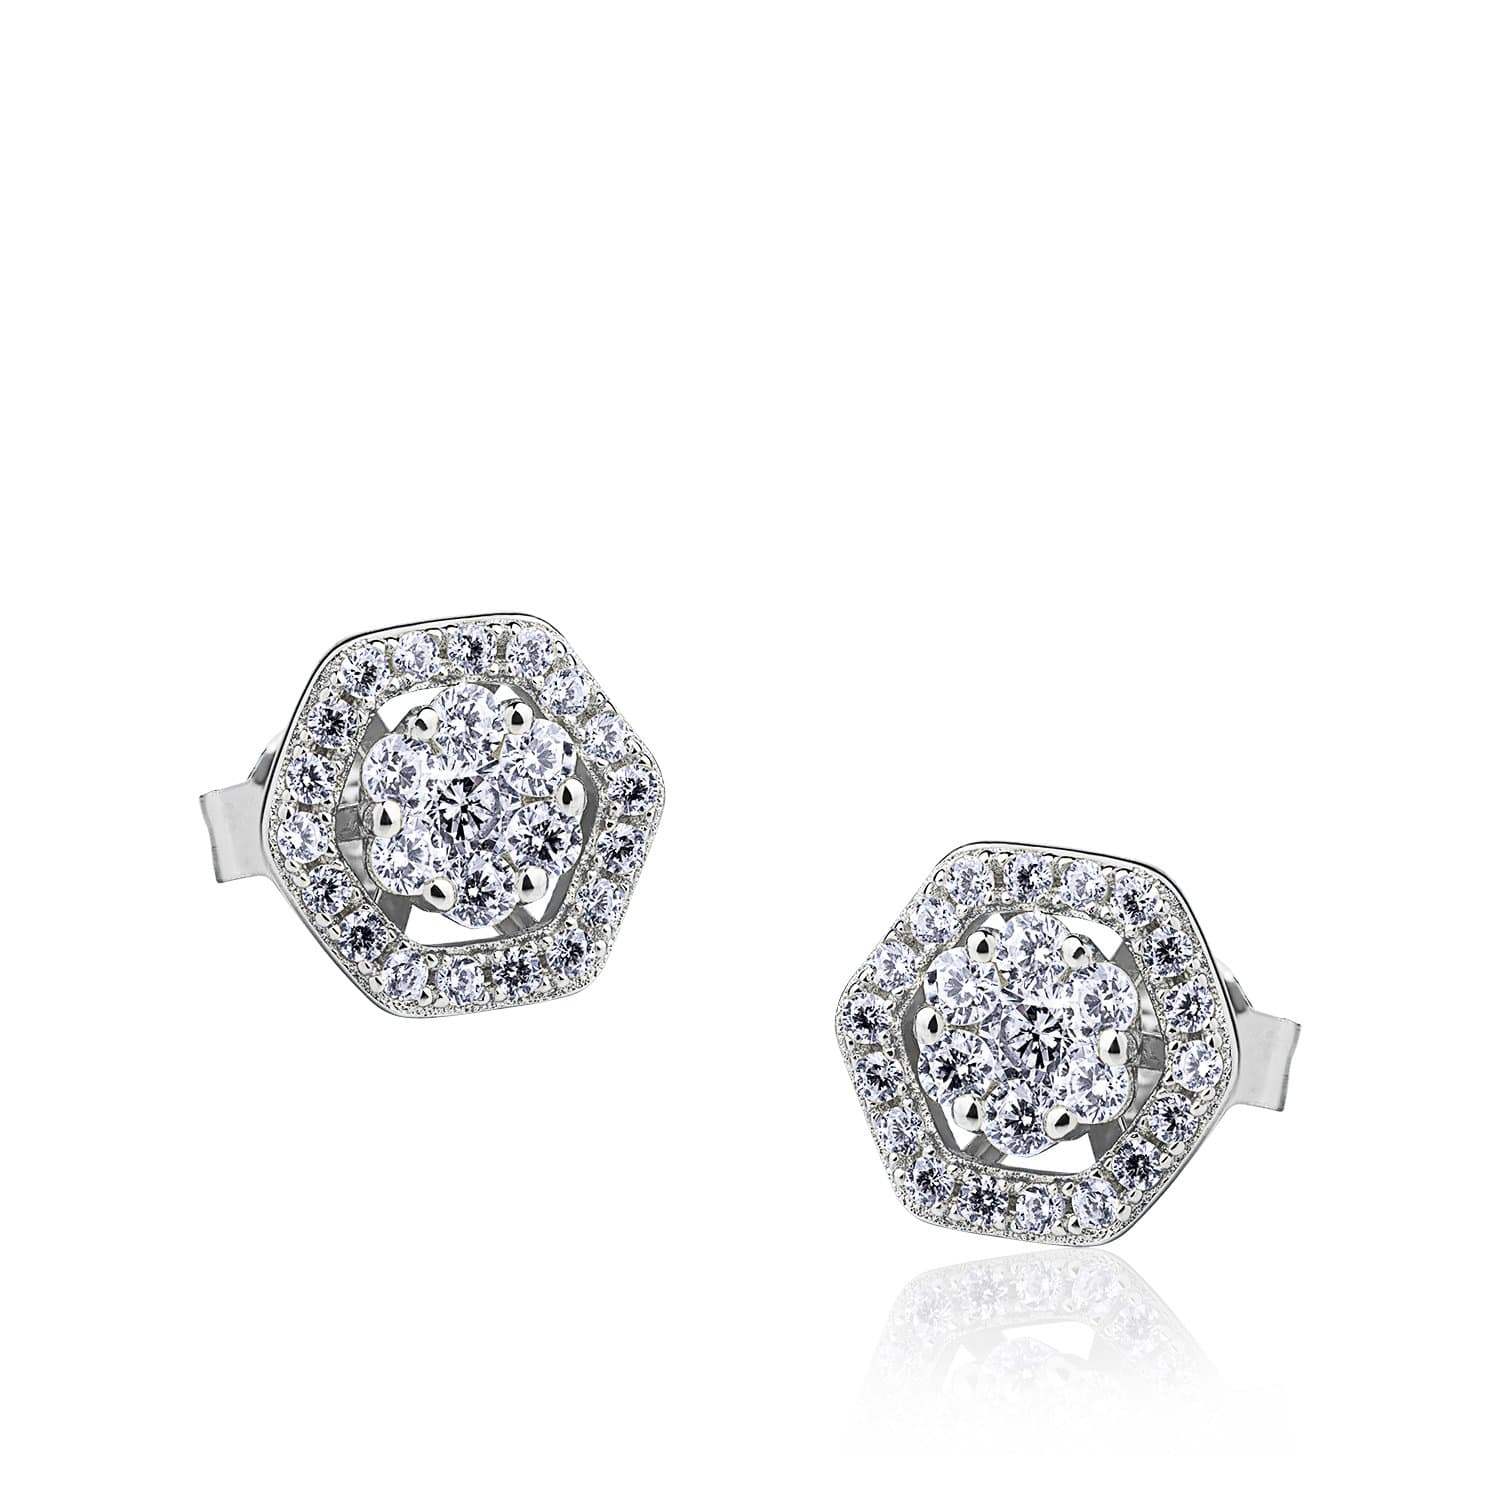 Lynora Jewellery Earring Sterling Silver Hexagono Flower Earrings Sterling Silver